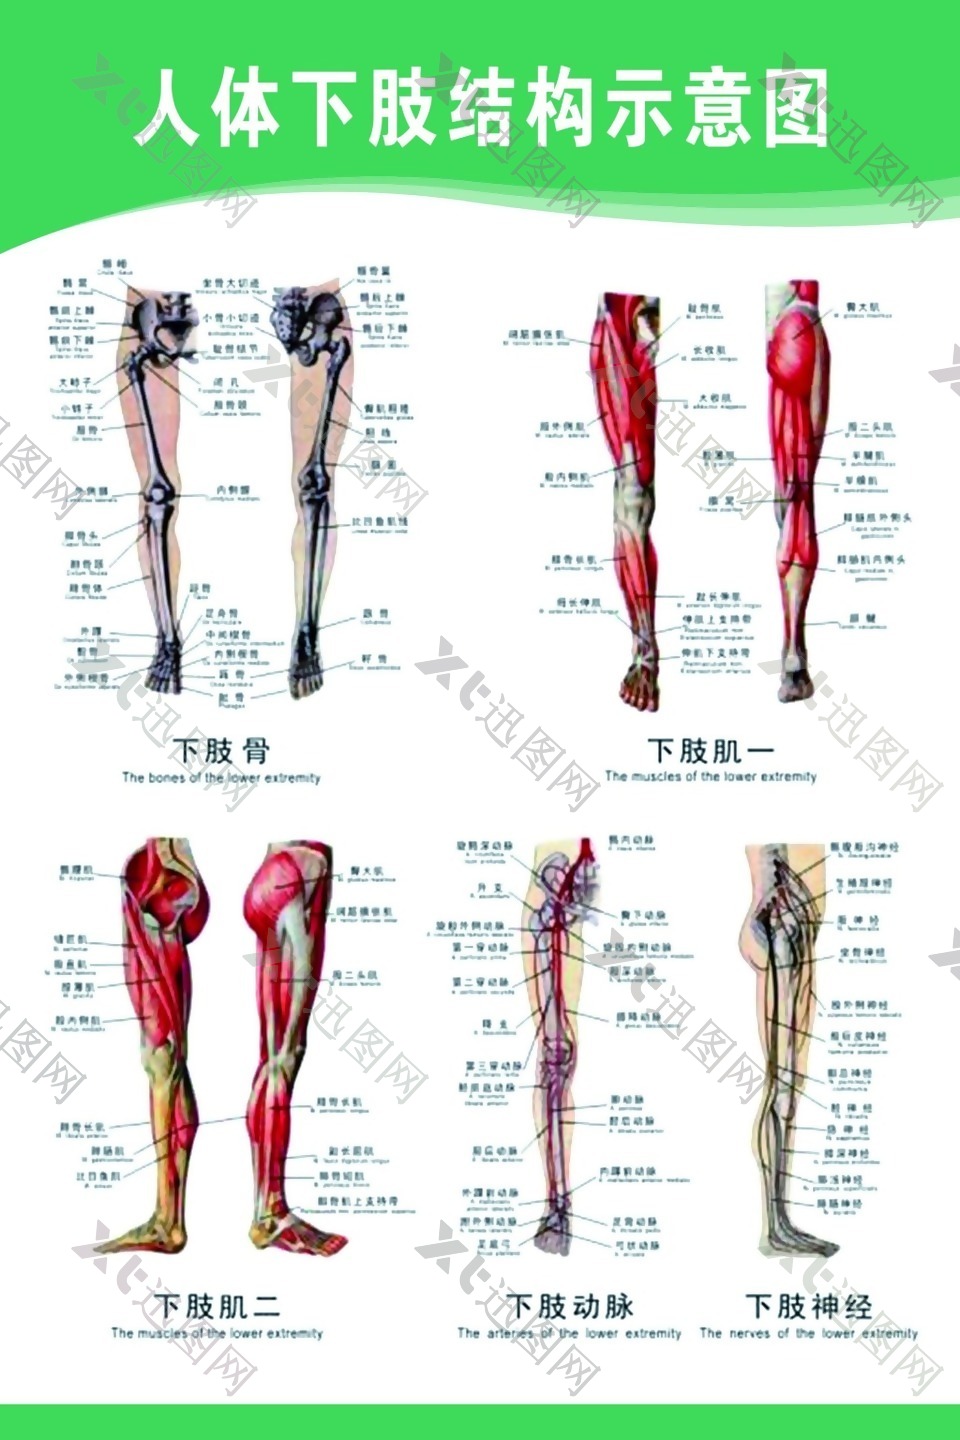 人体下肢结构示意图